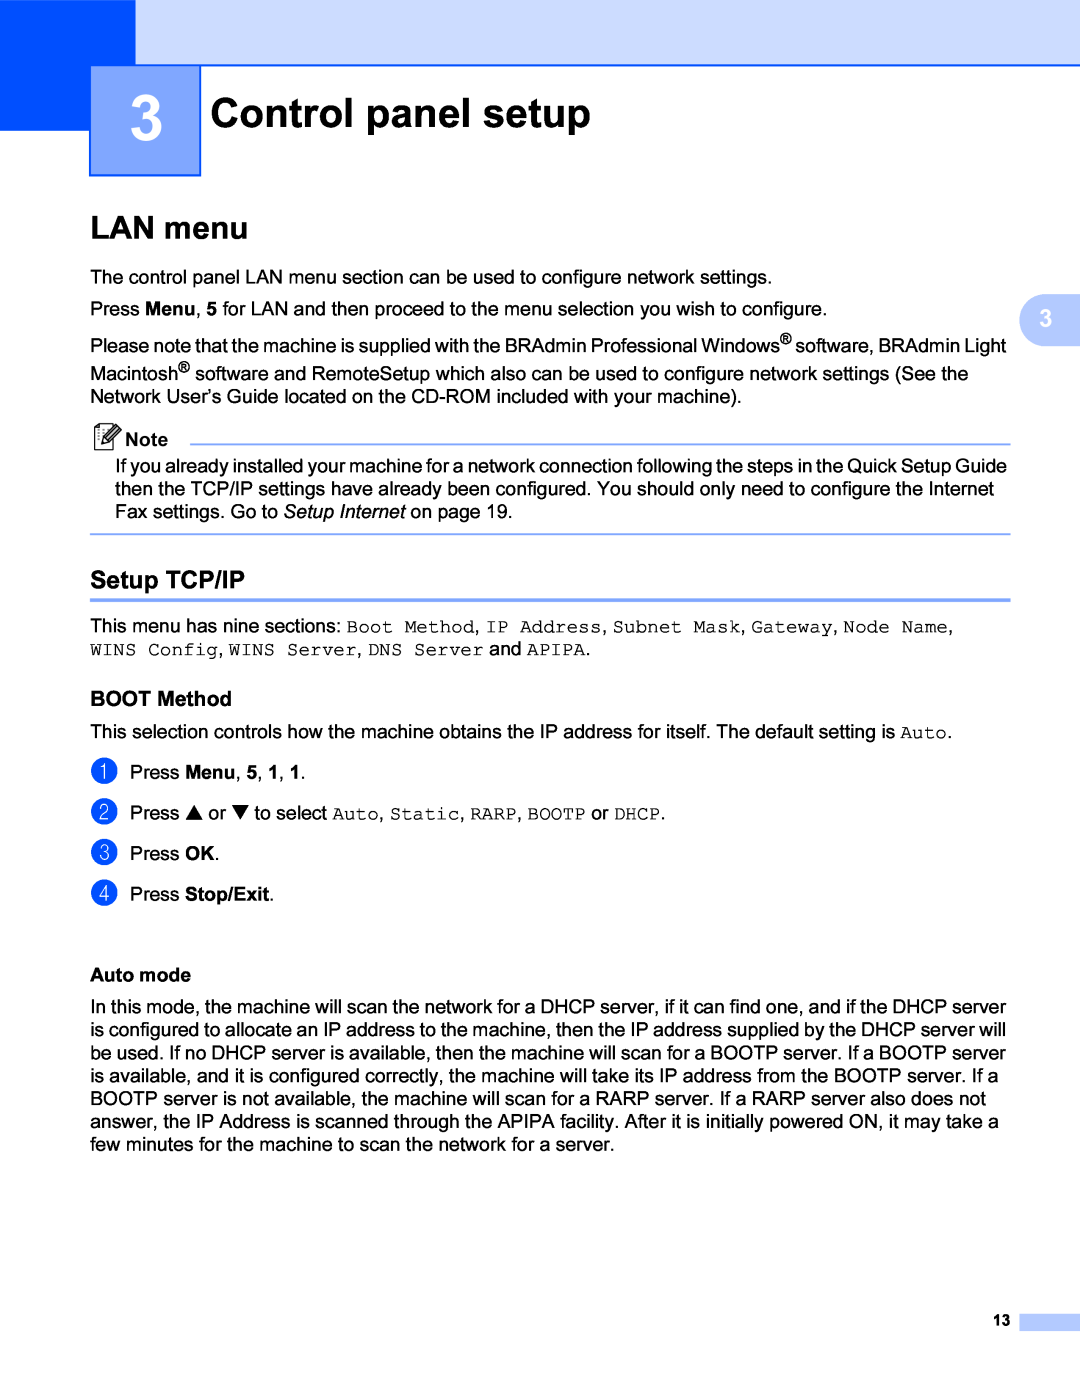 Brother SHB6102 manual Control panel setup, LAN menu, Setup TCP/IP, BOOT Method, a b c d 